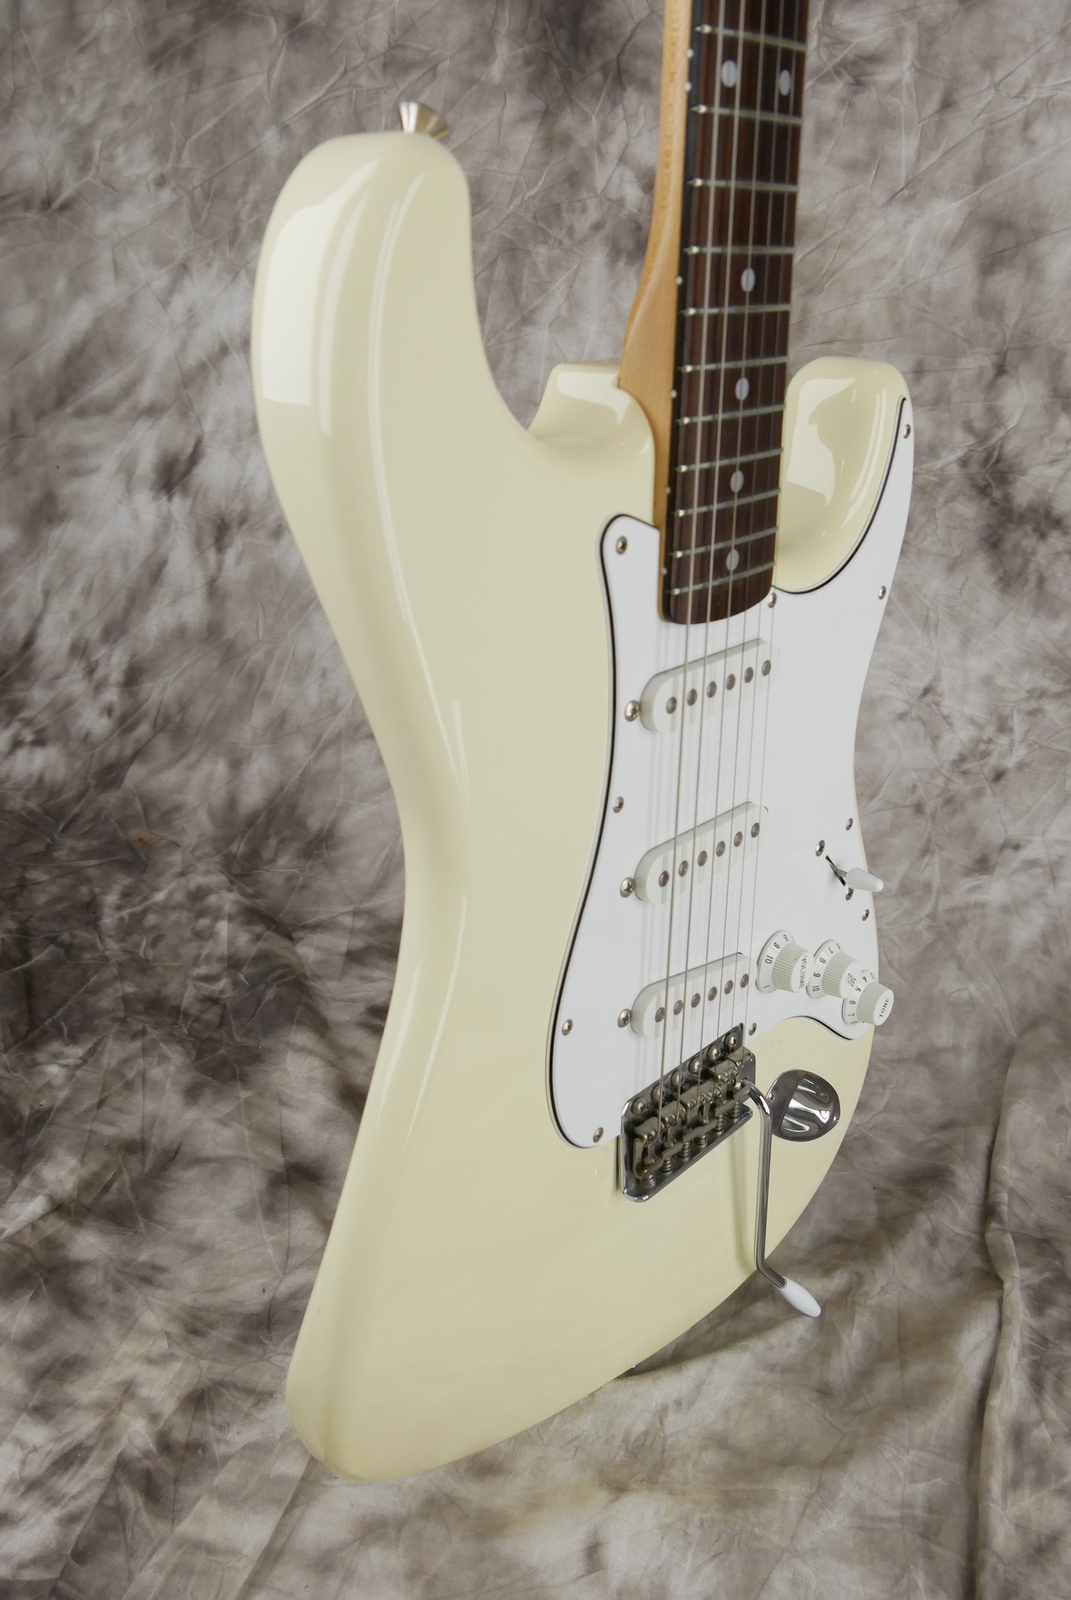 Fender_Stratocaster_Squier_series_Japan_olympic_white_1993-005.JPG